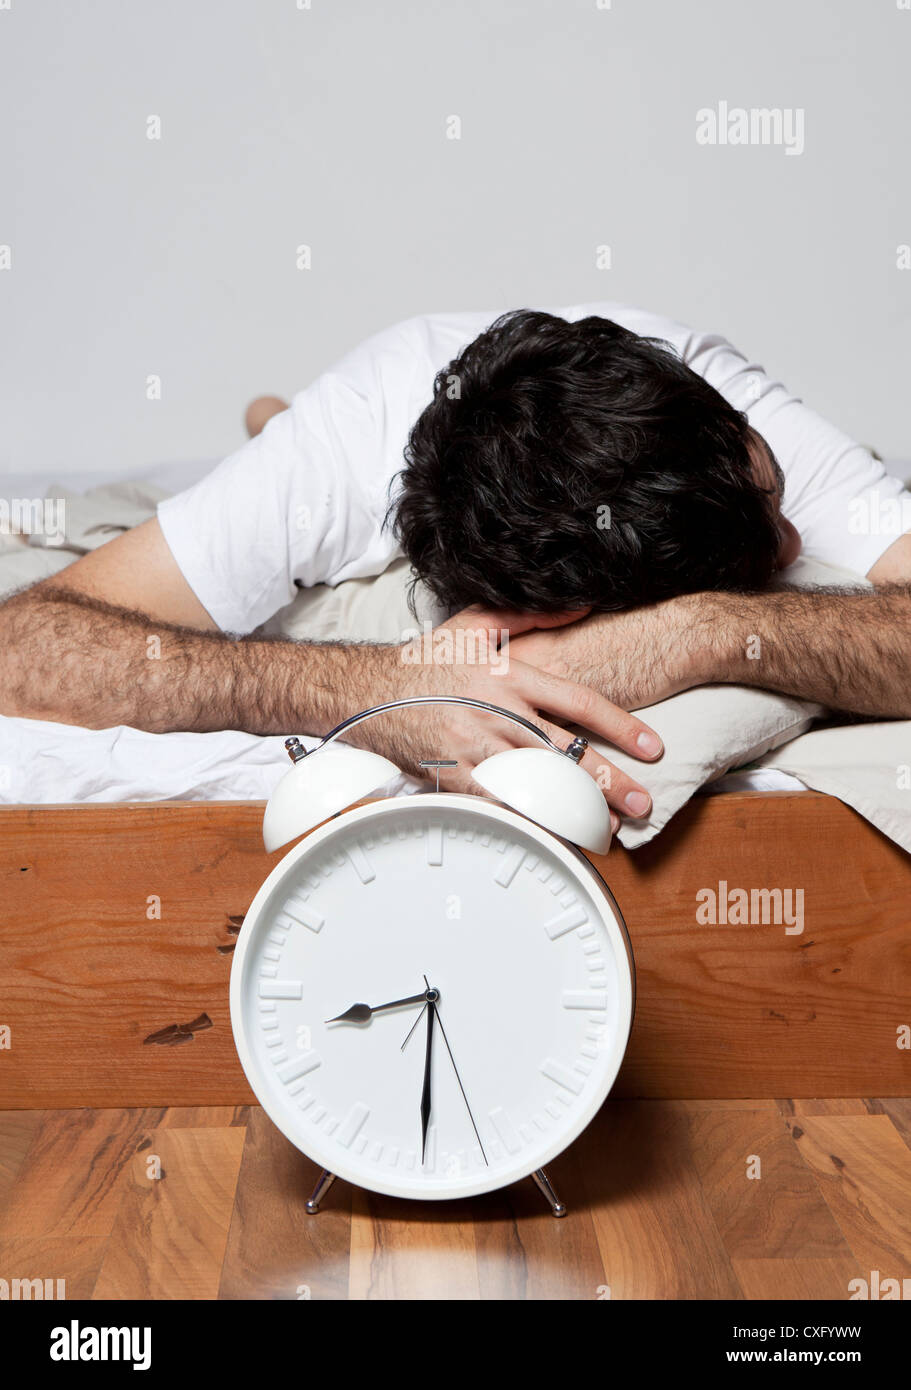 Ein junger Mann schläft auf einem Bett in der Nähe von einem großen weißen Wecker. Stockfoto